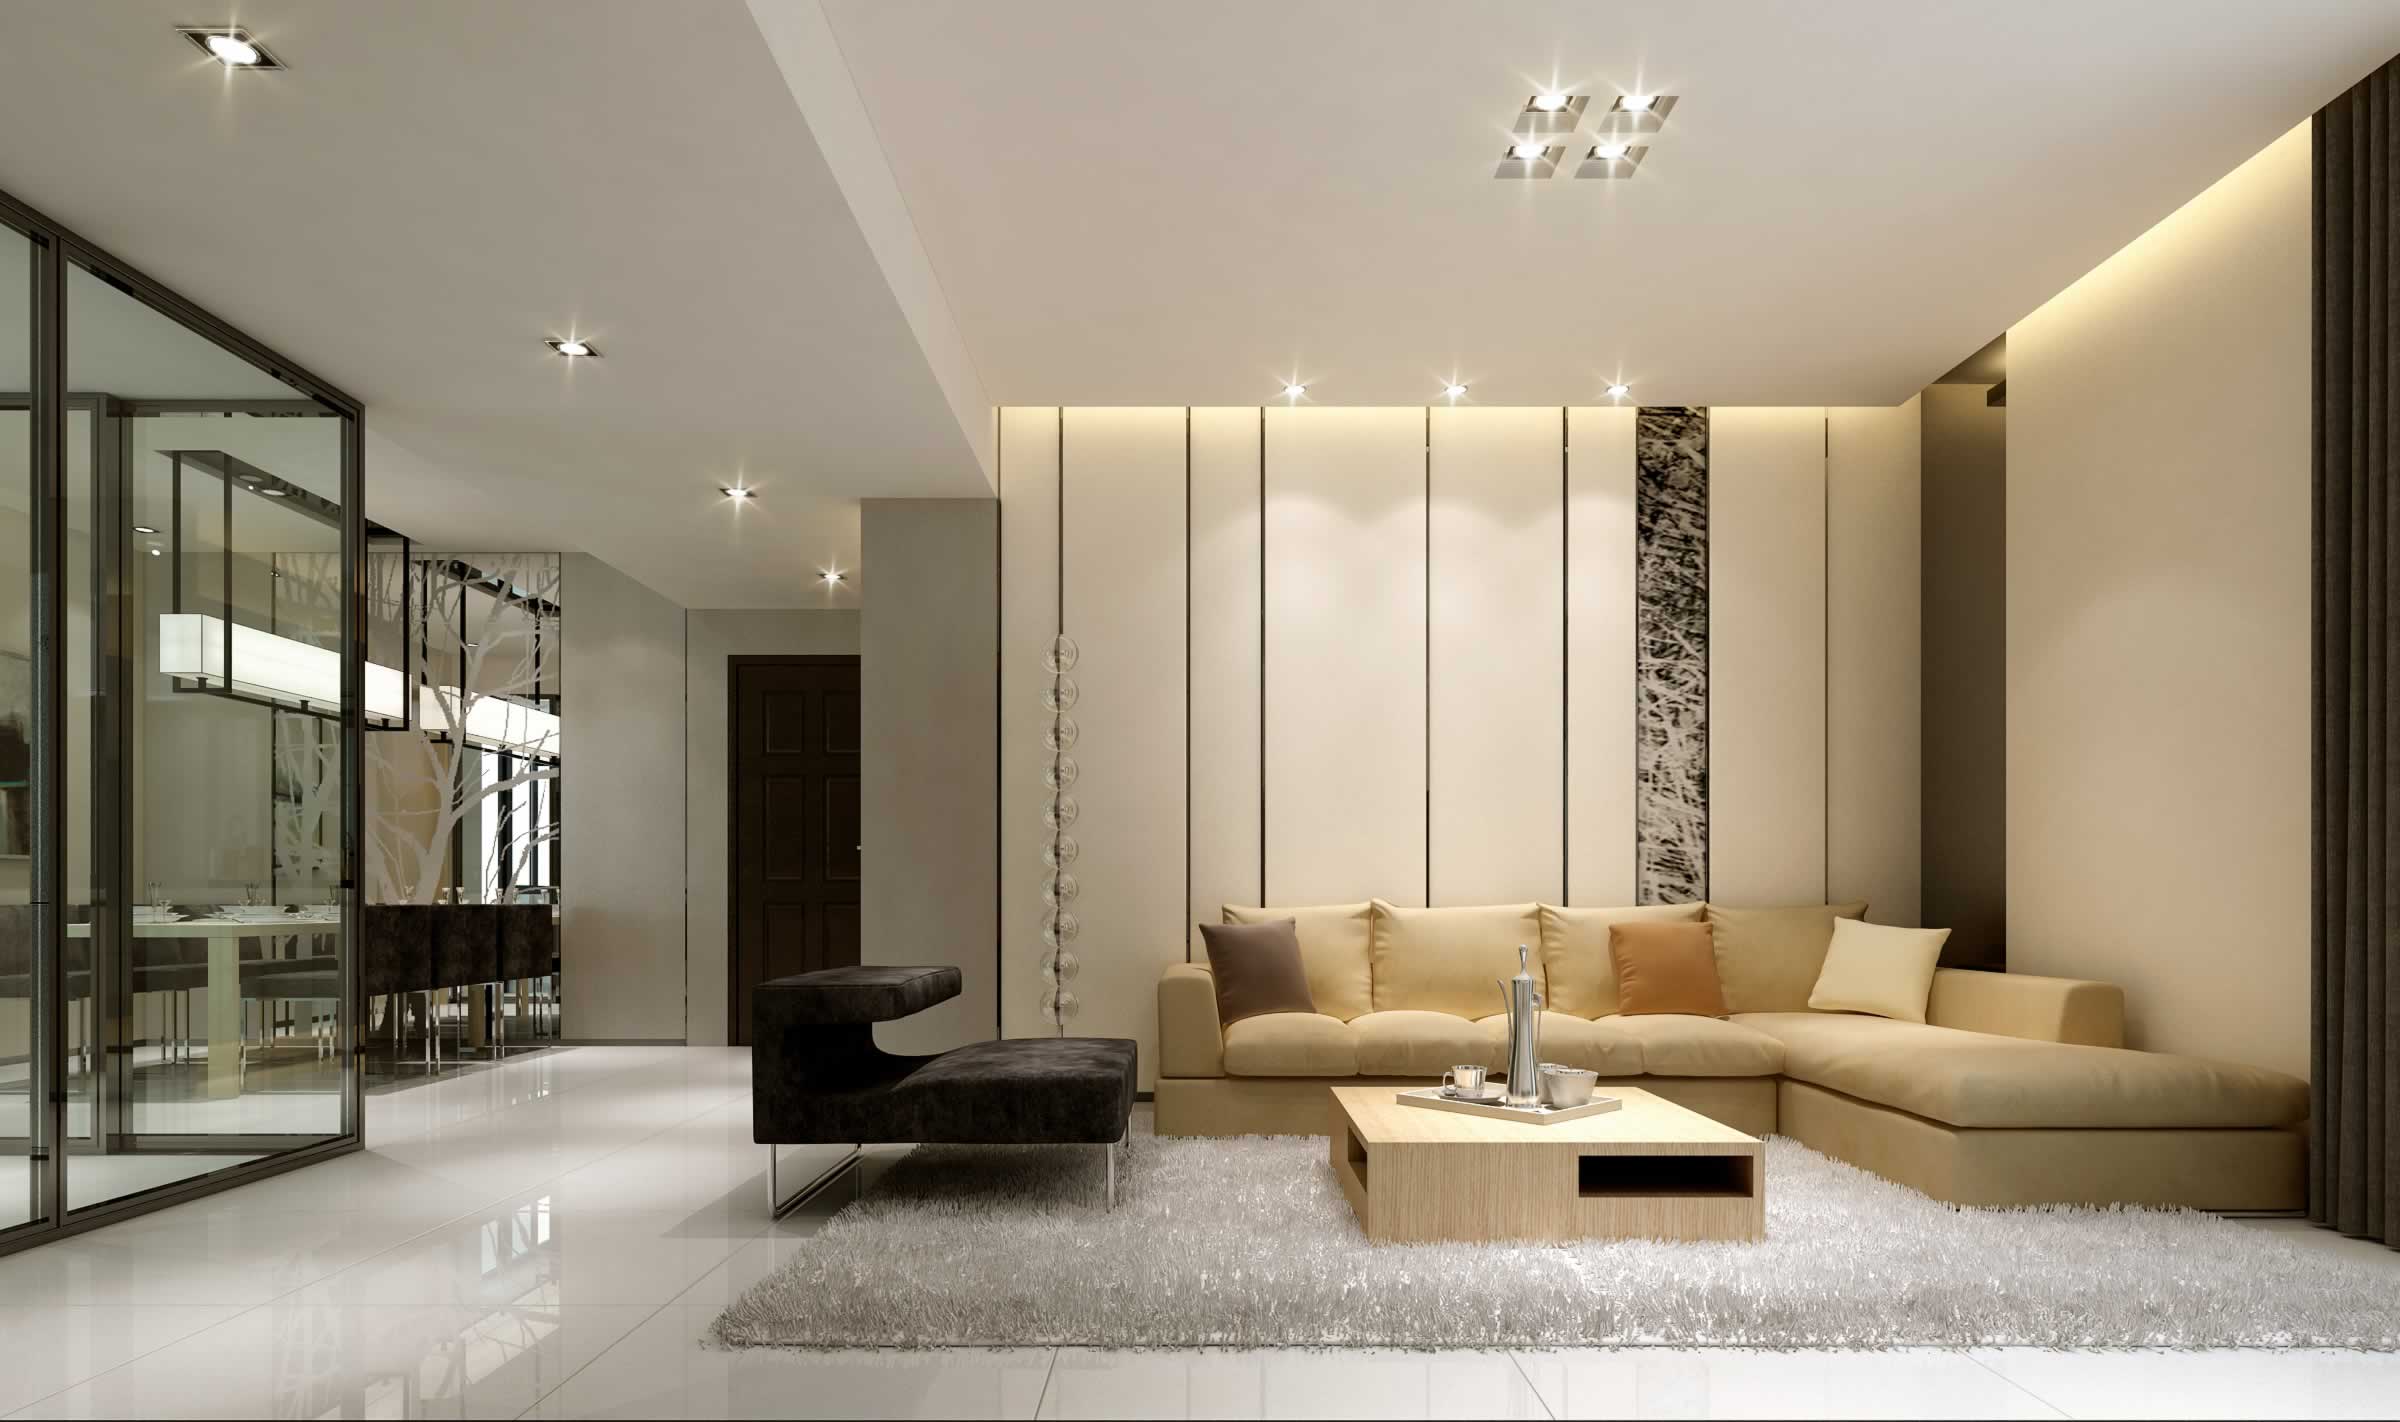 多种风格沙发背景墙效果图,感受不同风格的魅力